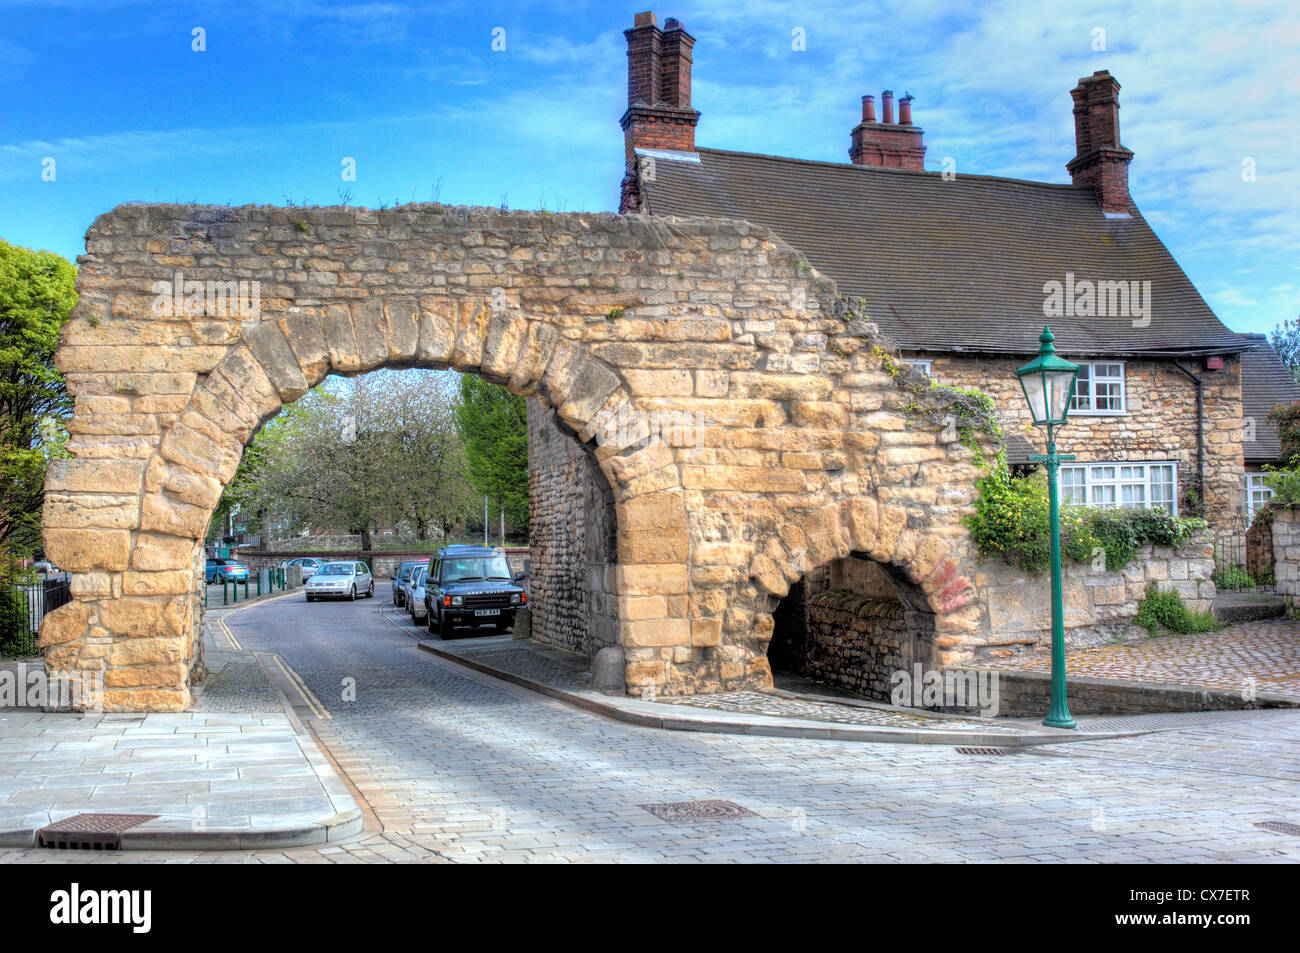 Newport Arch, Lincoln, Lincolnshire, England, Regno Unito Foto Stock